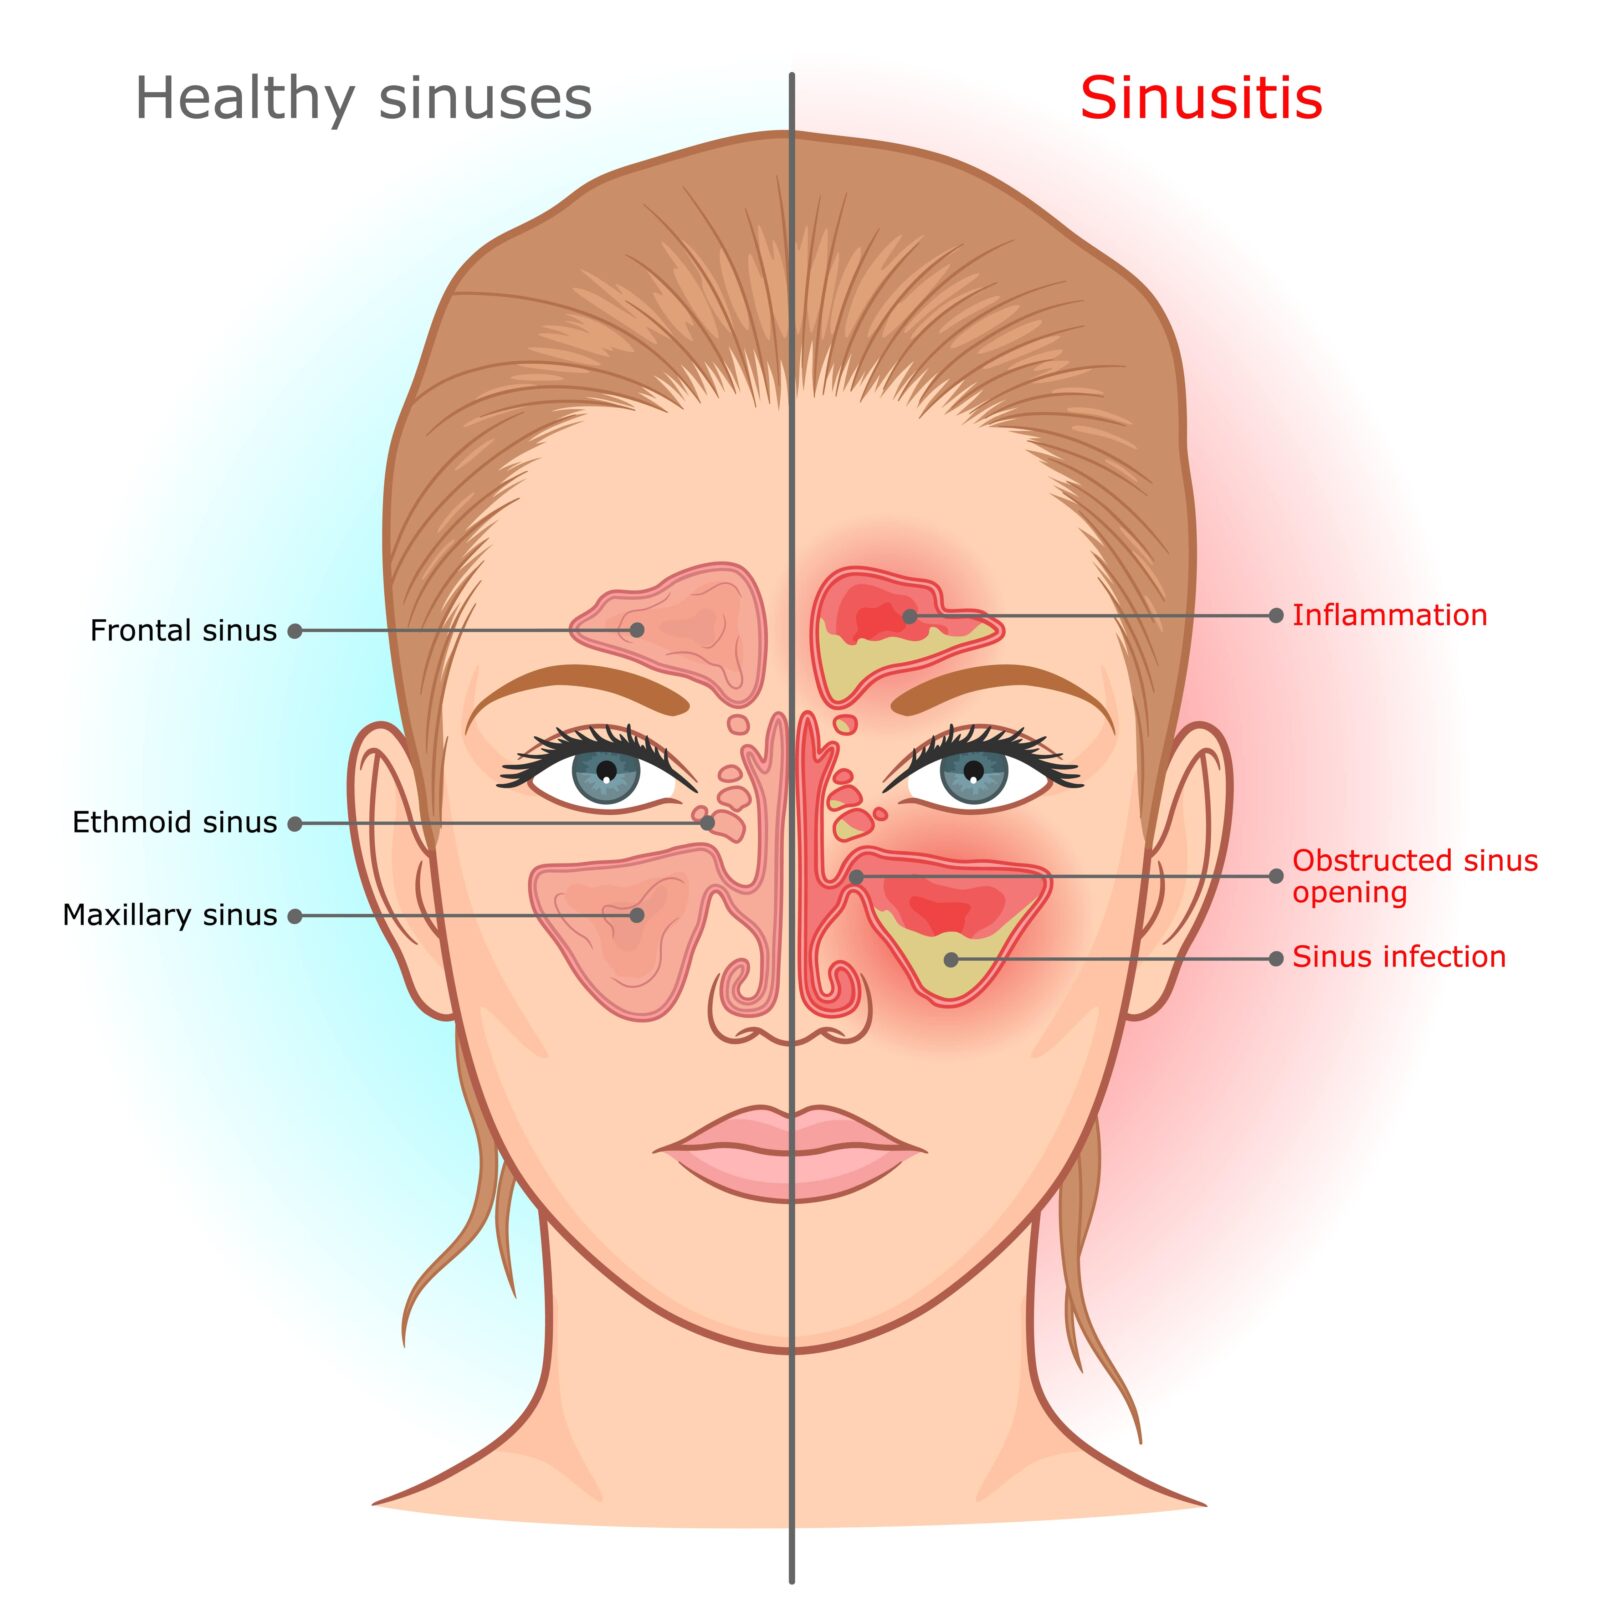 healthy sinuses vs. sinusitis